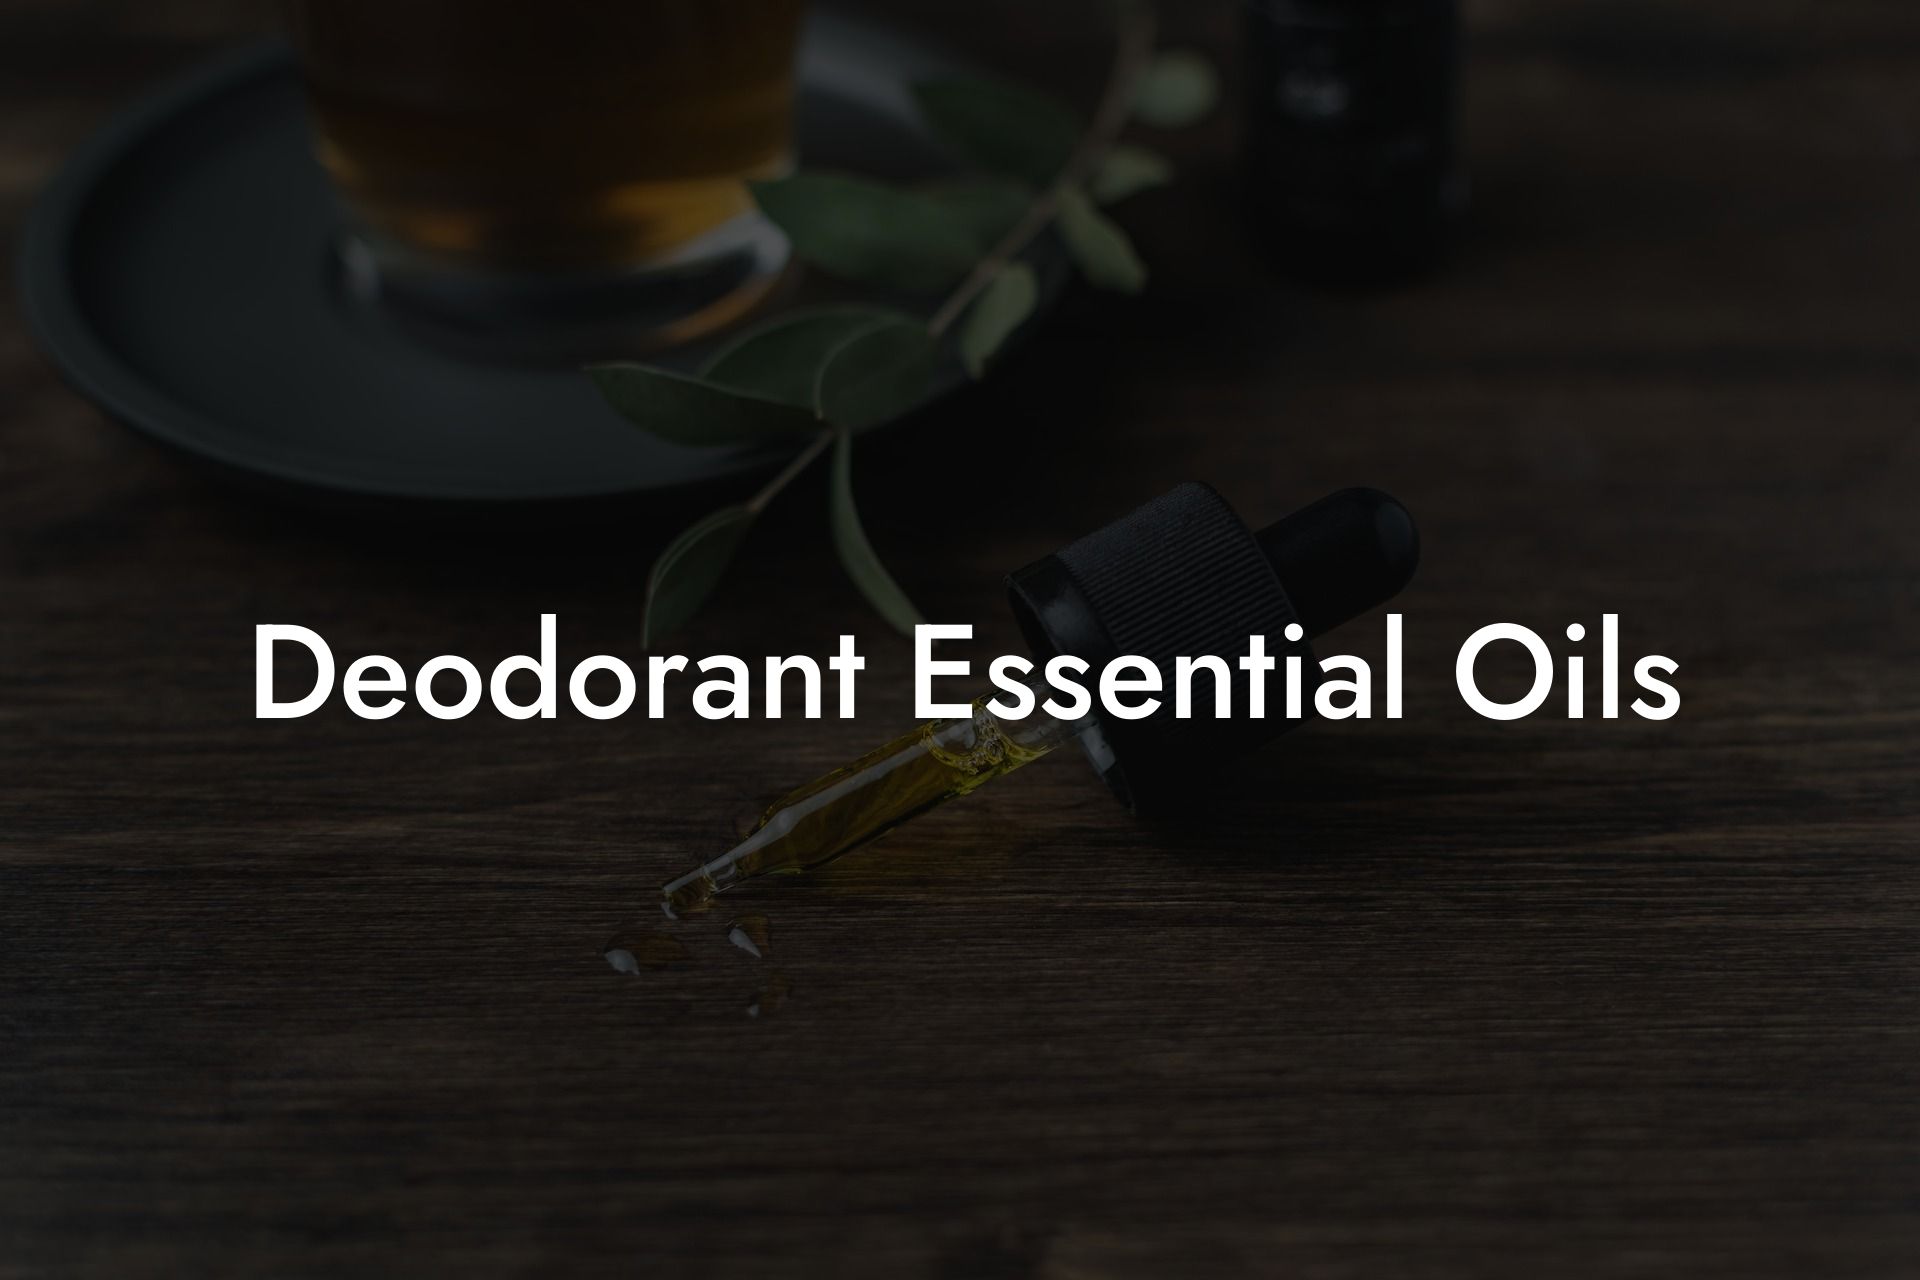 Deodorant Essential Oils